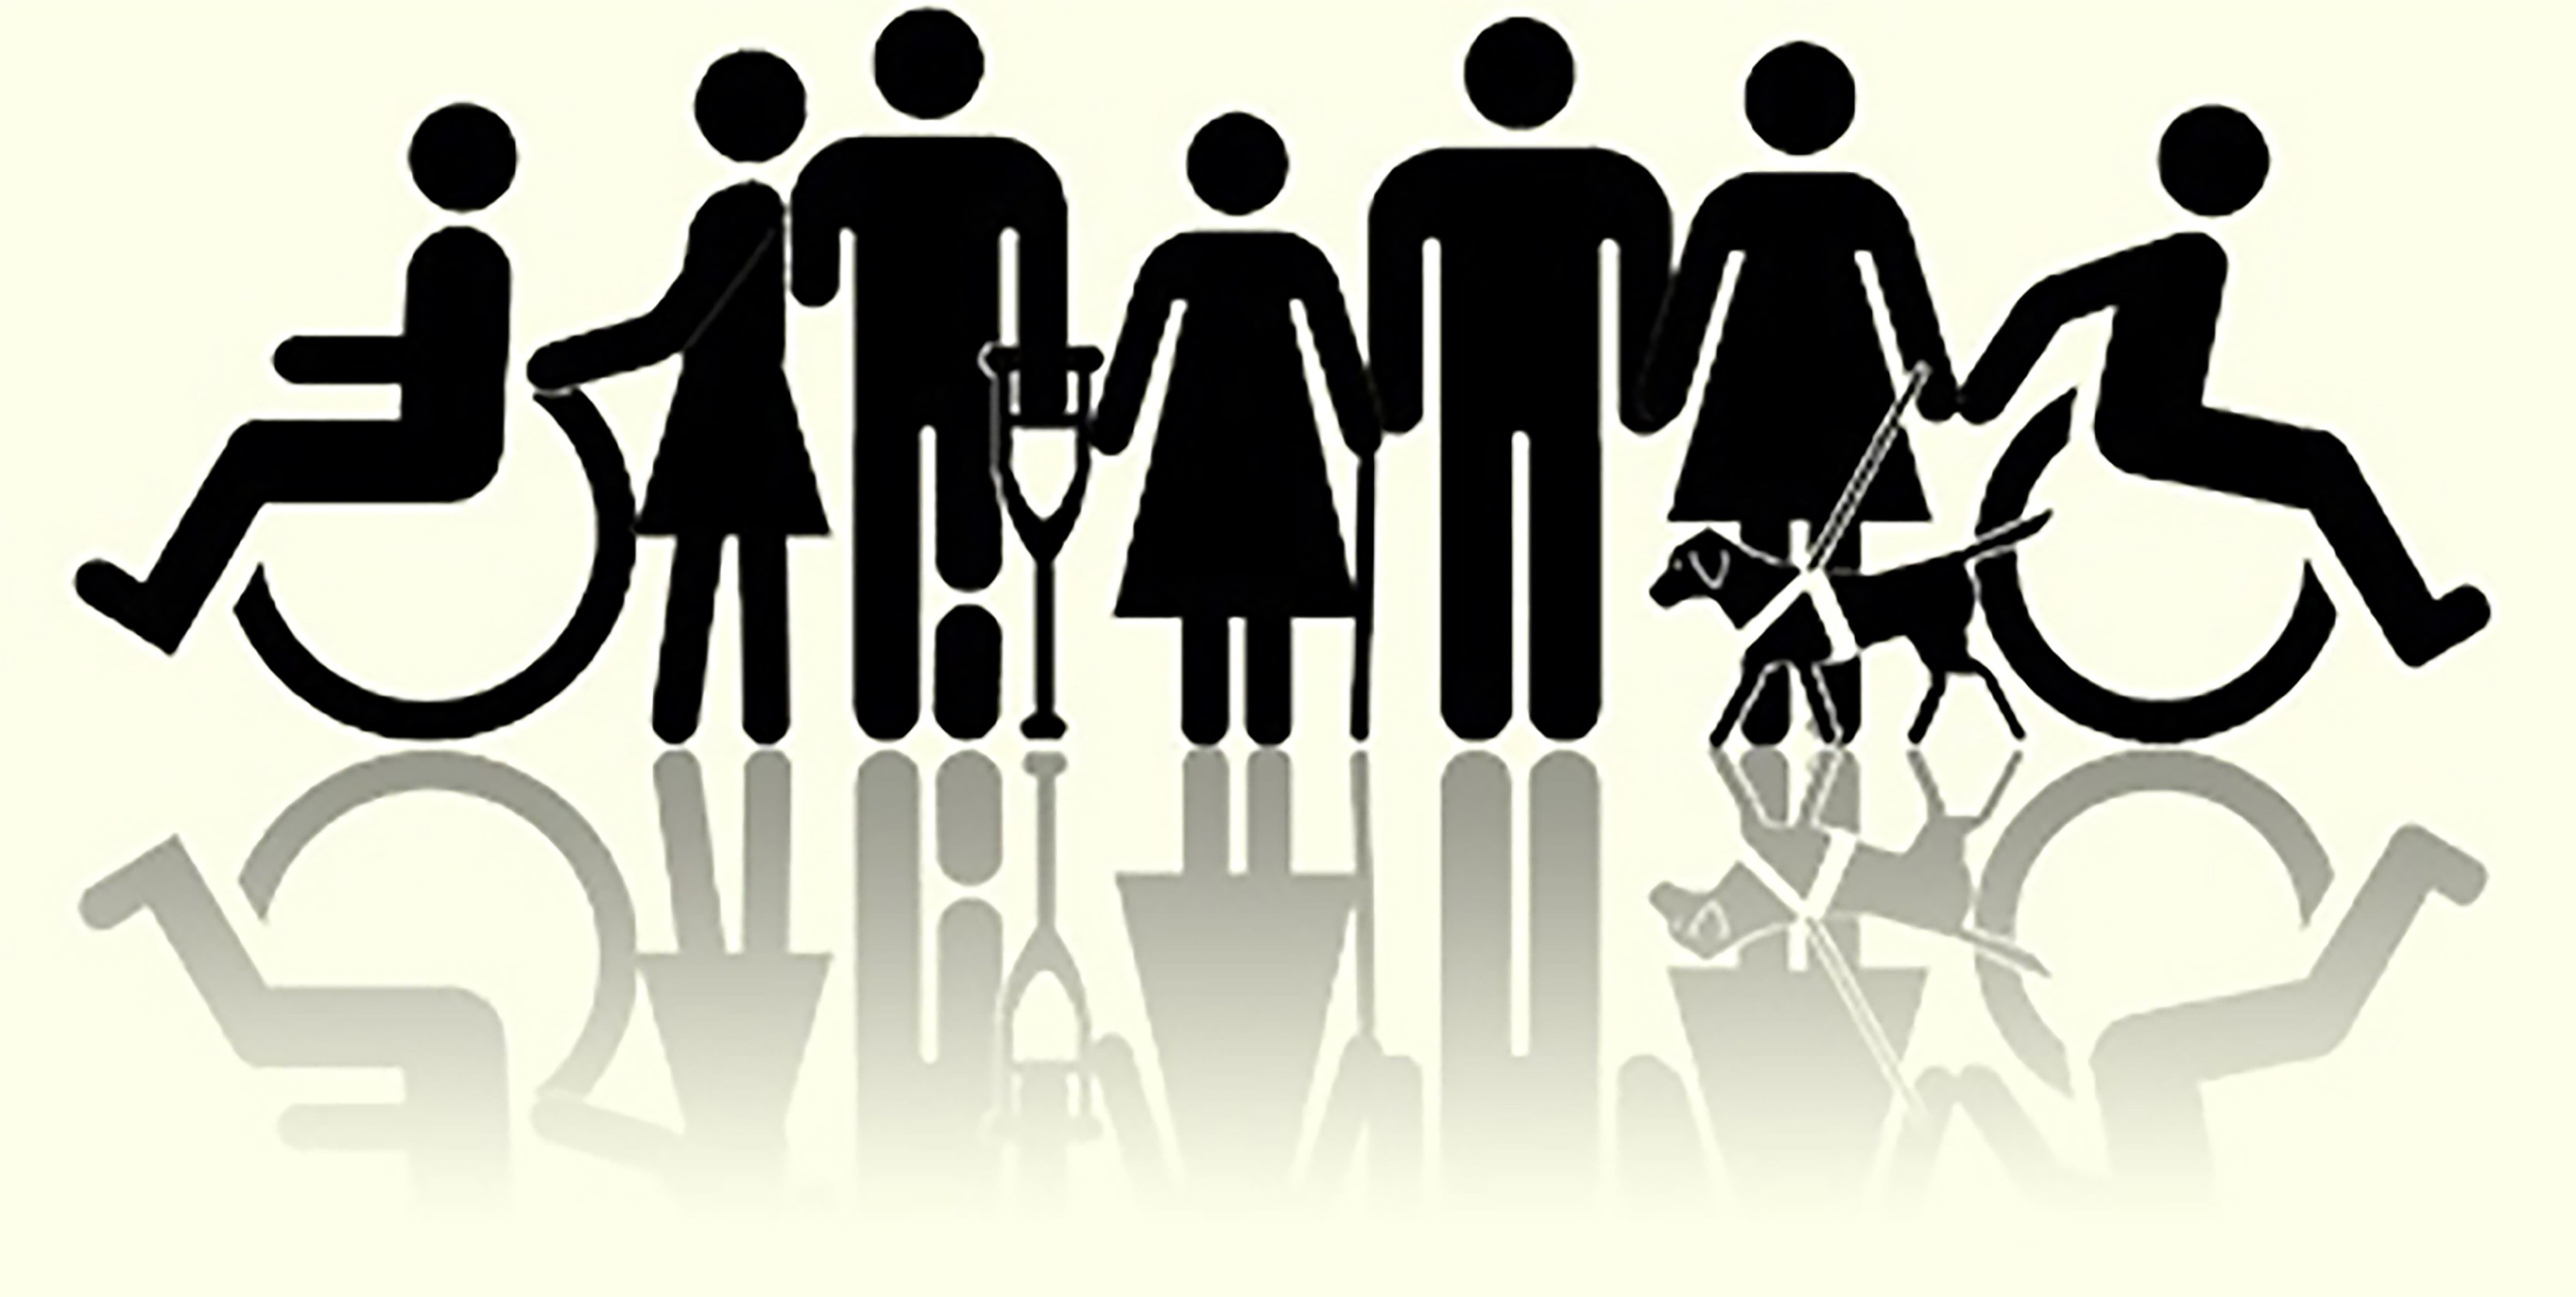 #PraCegoVer desenho representativo de pessoas com deficiência. Pessoas em cadeira de rodas, usando muleta e cão guia.